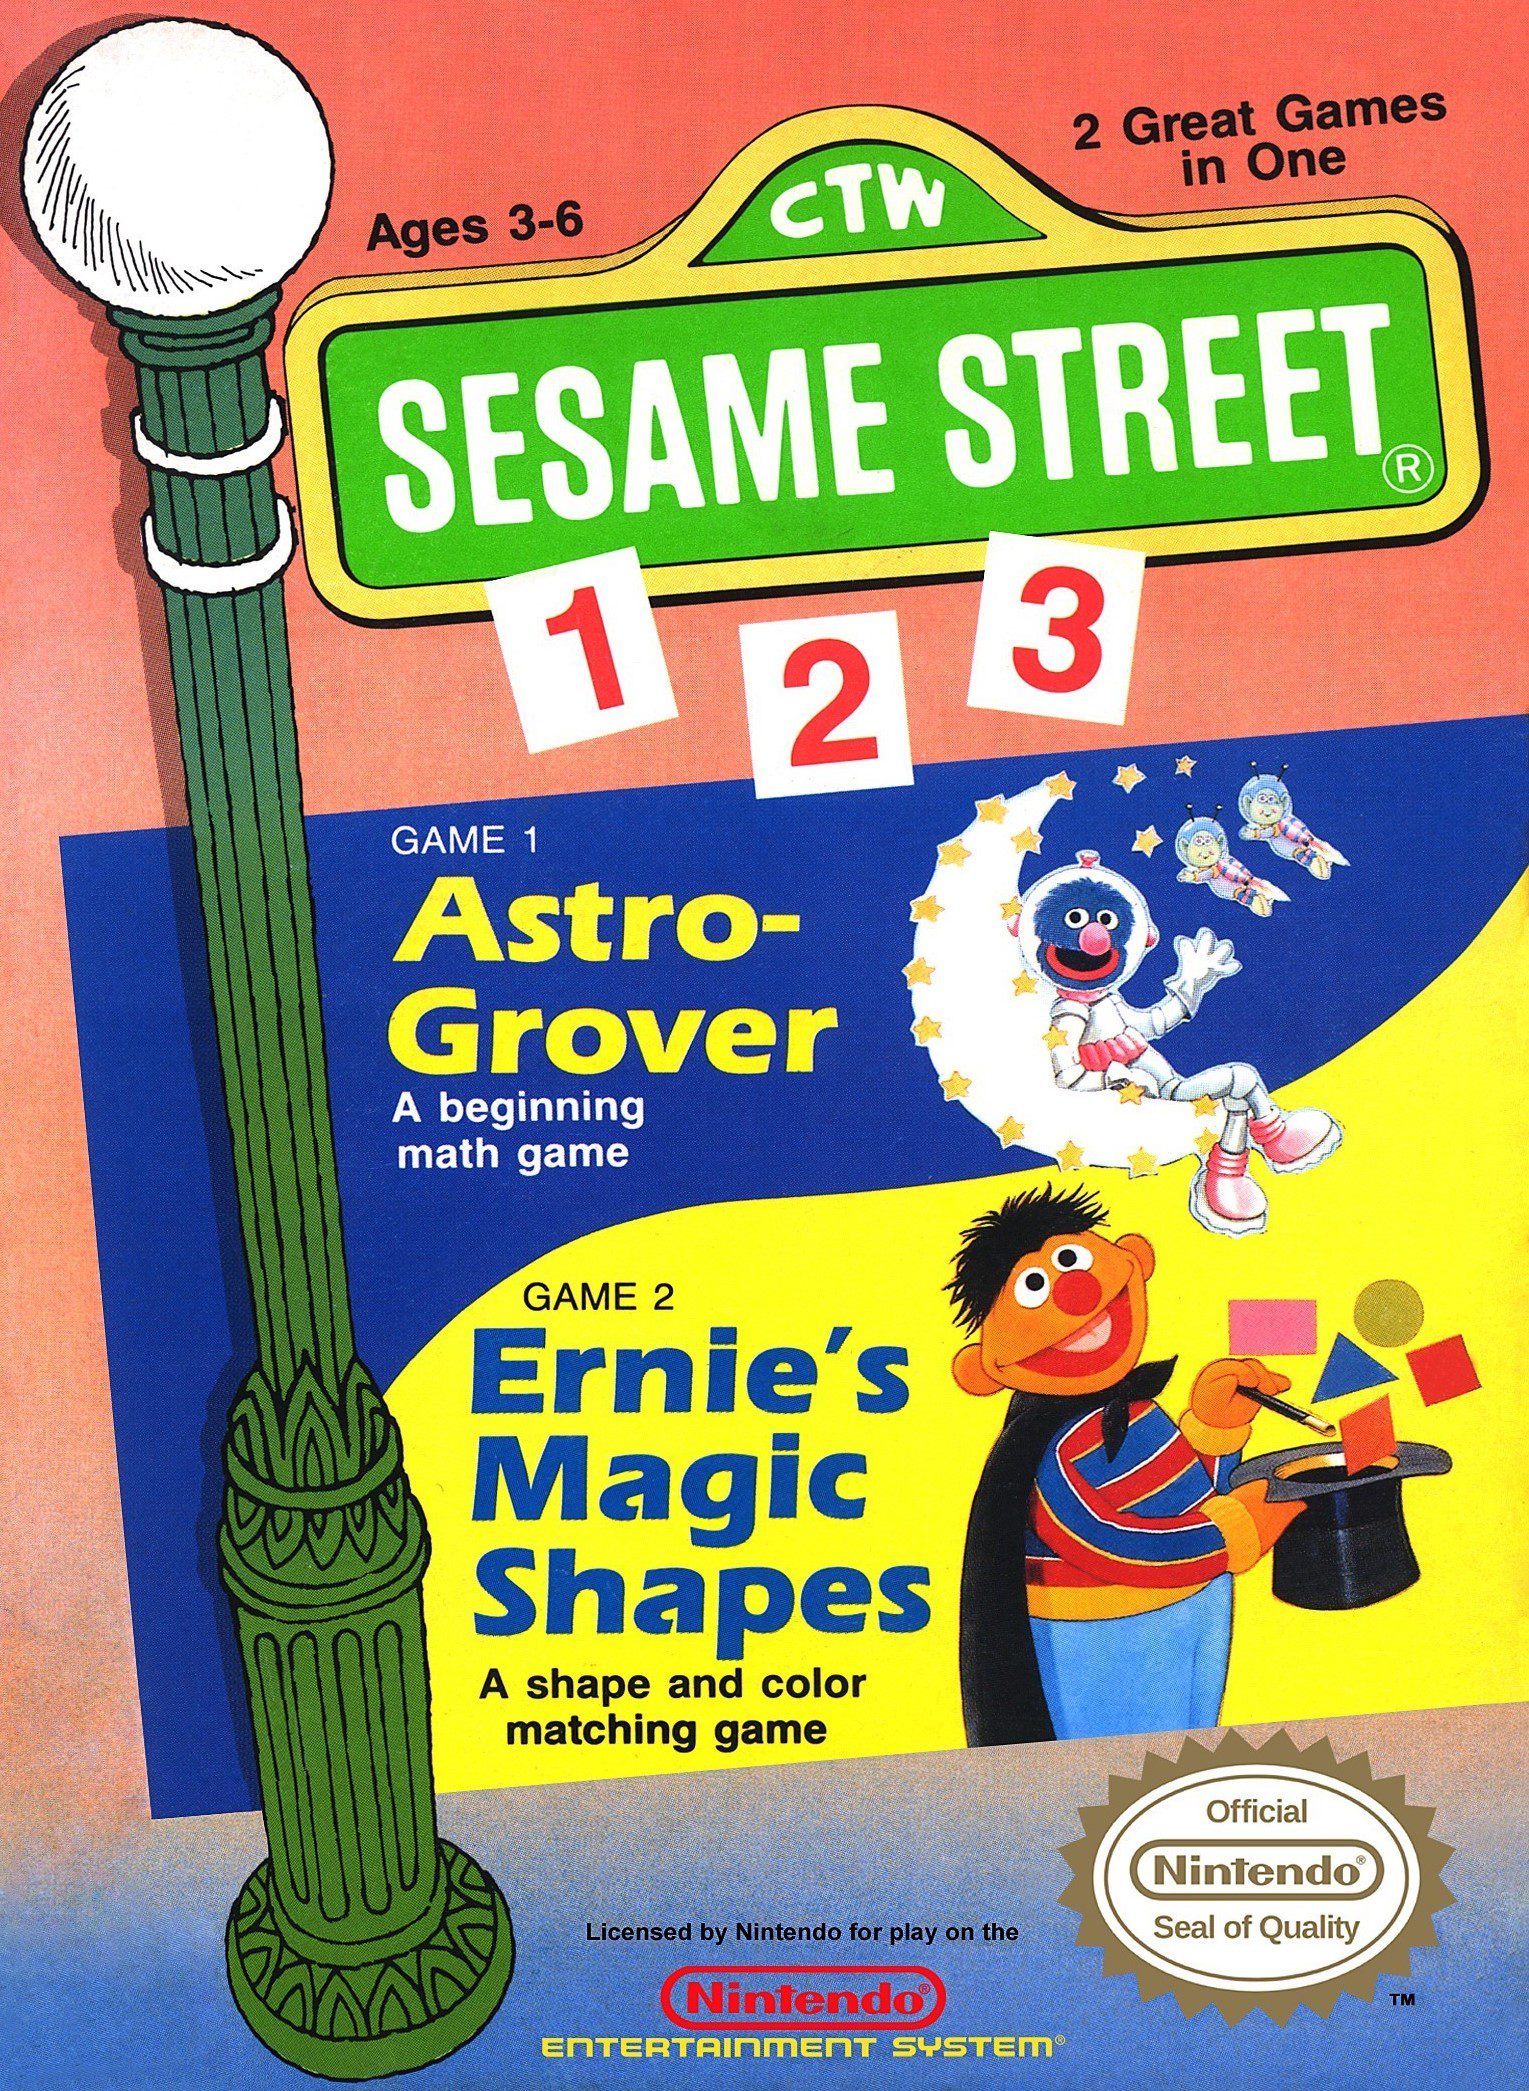 Sesame Street 1-2-3 for Nintendo Entertainment System (NES)